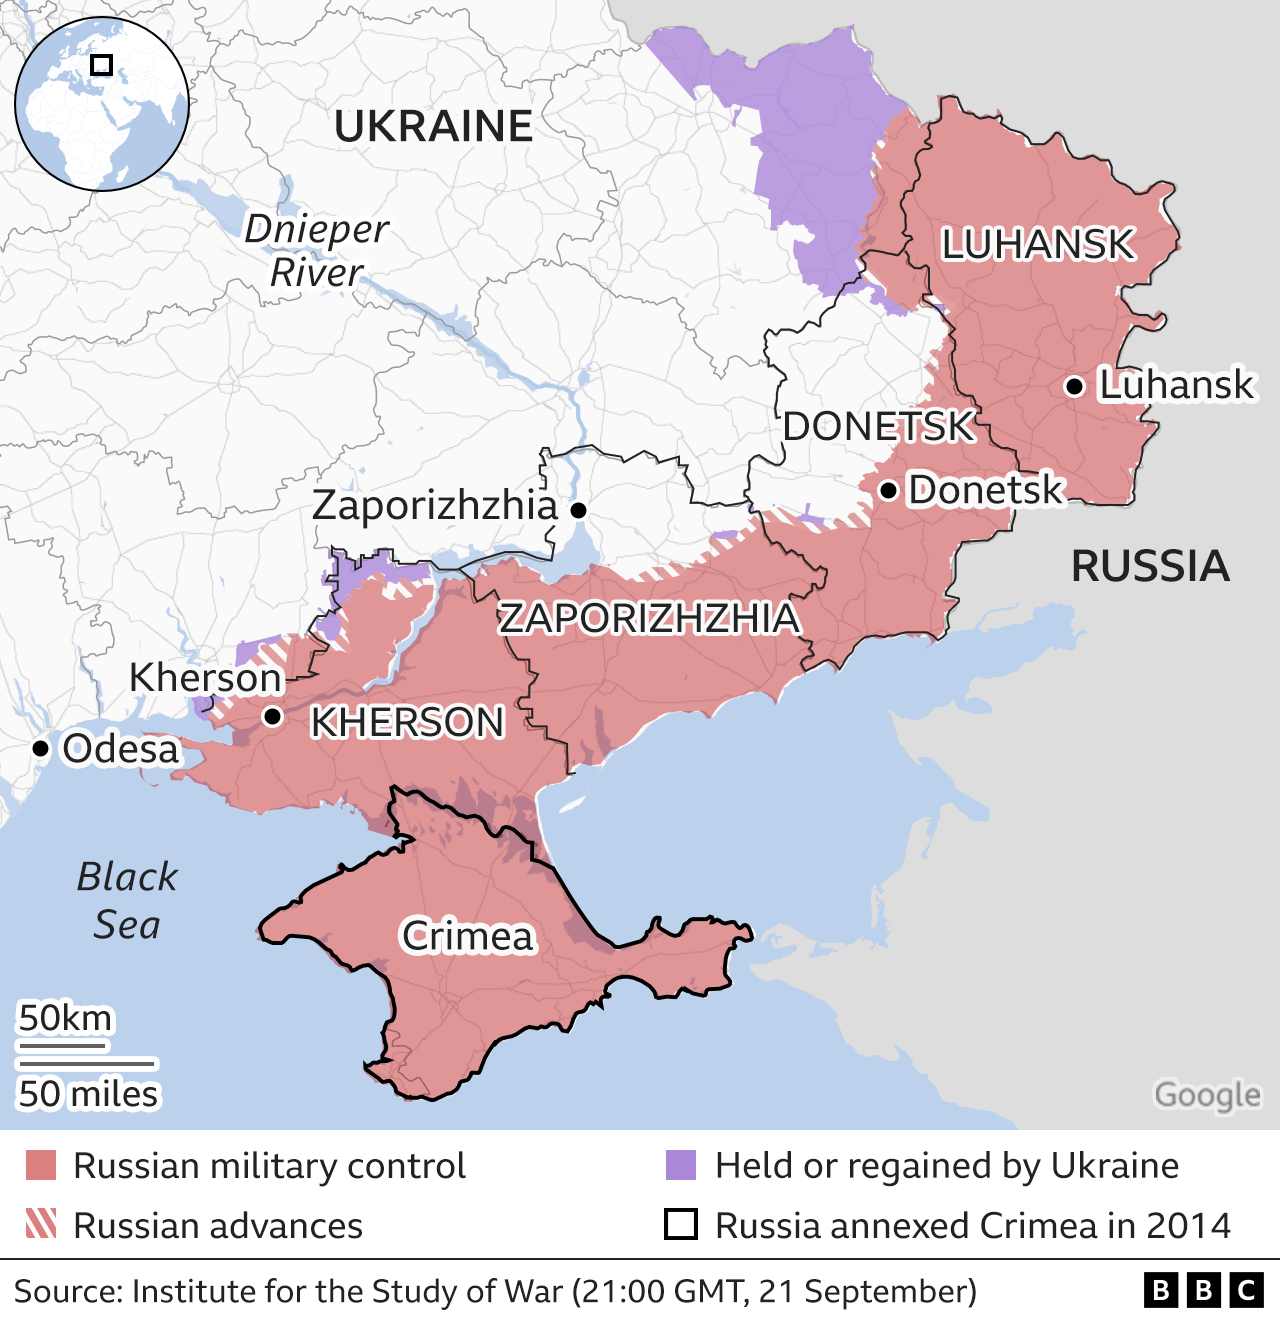 Ουκρανοί φεύγουν από τις περιοχές που οδεύουν σε προσάρτηση από την Ρωσία και μέσα σε αυτήν φεύγουν όσοι Ρώσοι θέλουν να αποφύγουν τη στράτευση